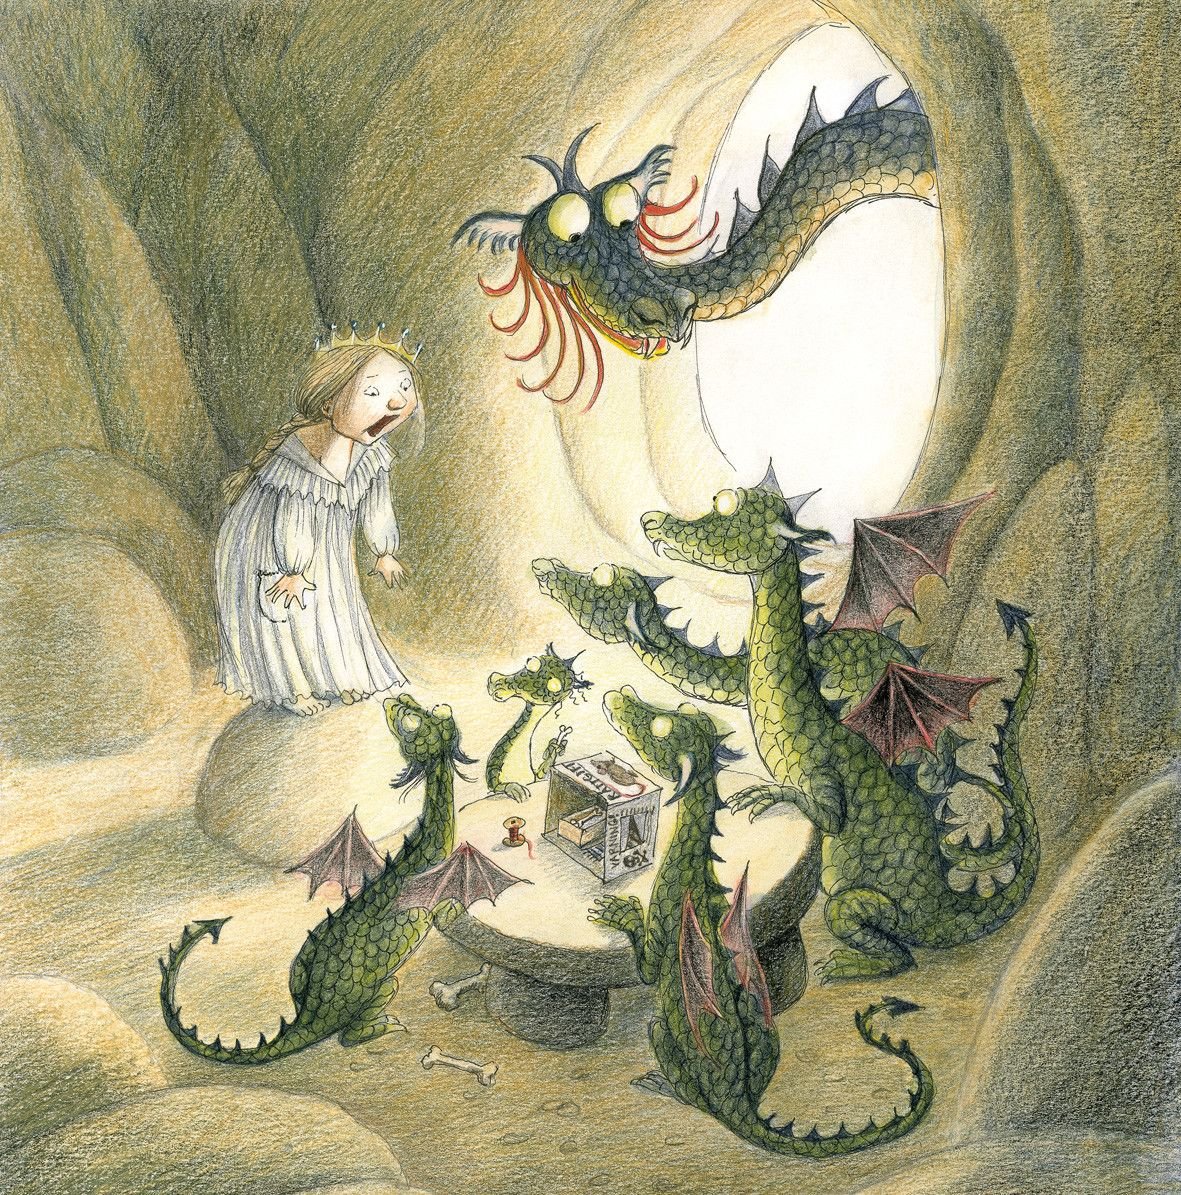 Сказки о драконах